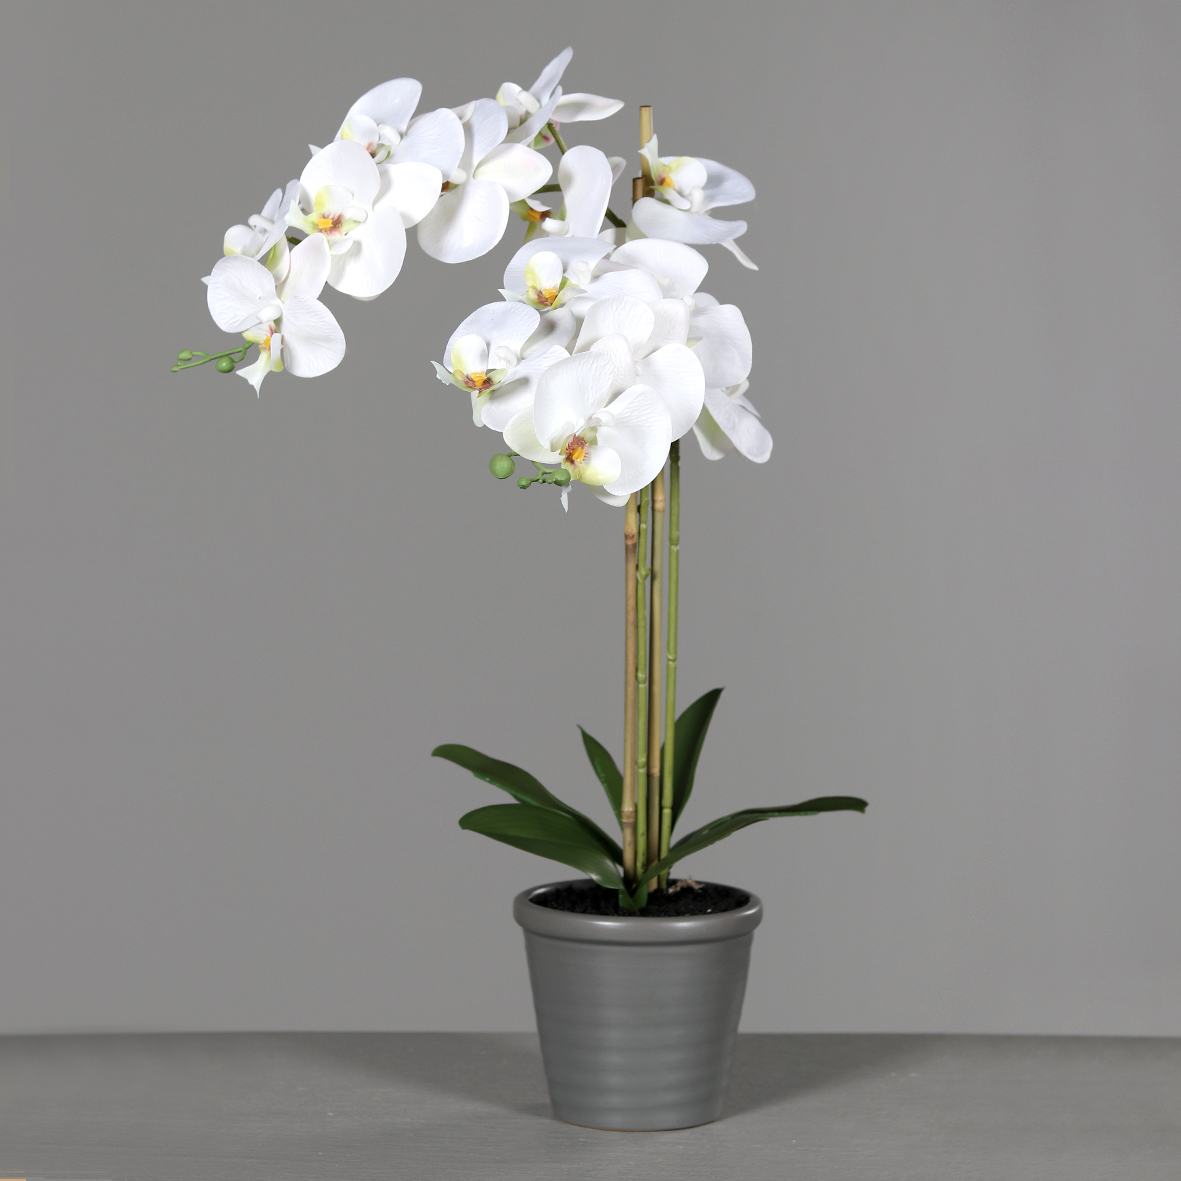 grauen DP im Keramiktopf Orchidee Kunstpflanzen künstliche Kunstblume Blumen 60x32cm weiß